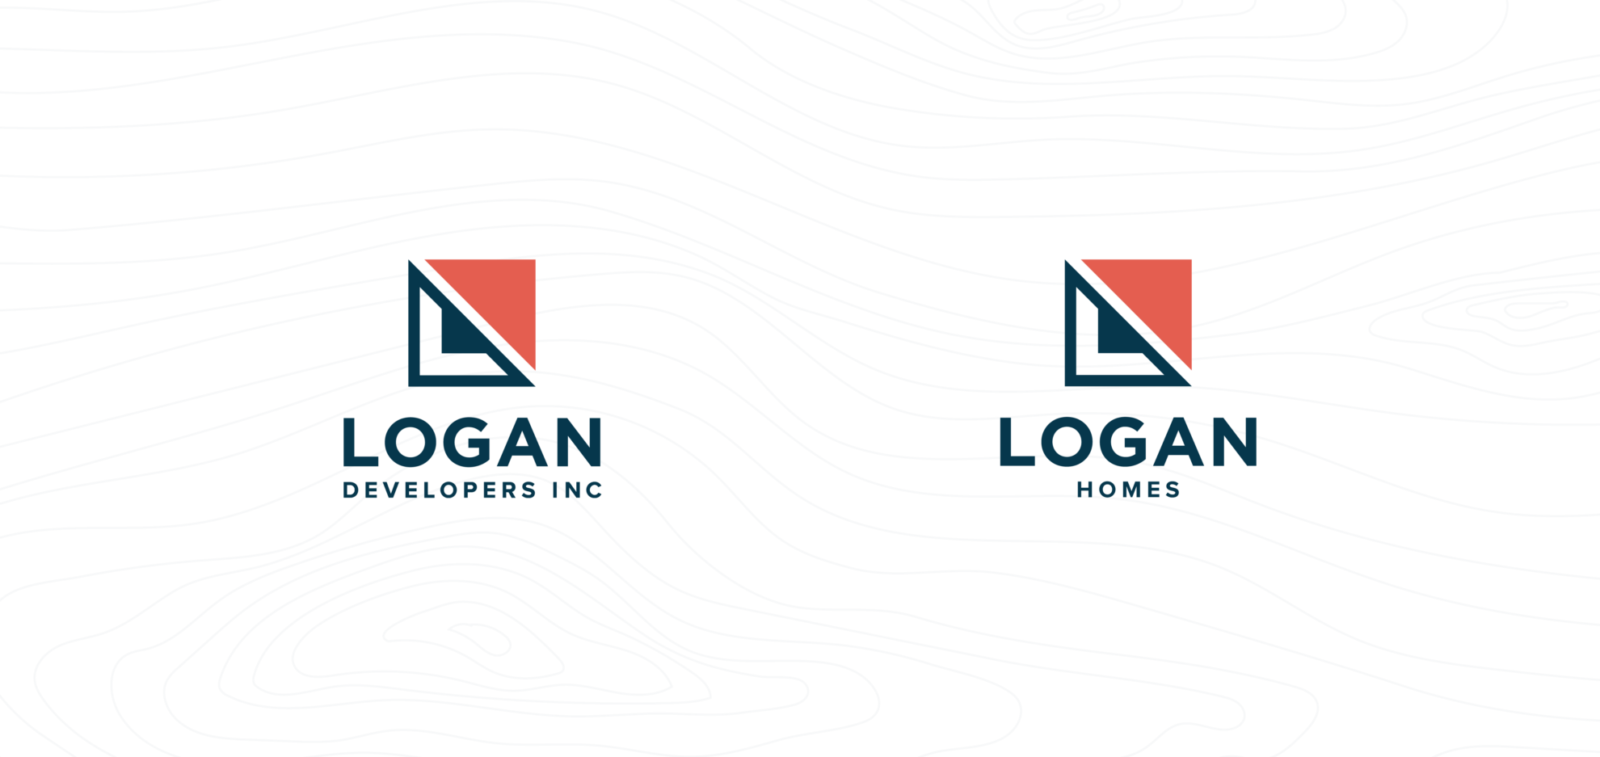 LGHS-main-logos